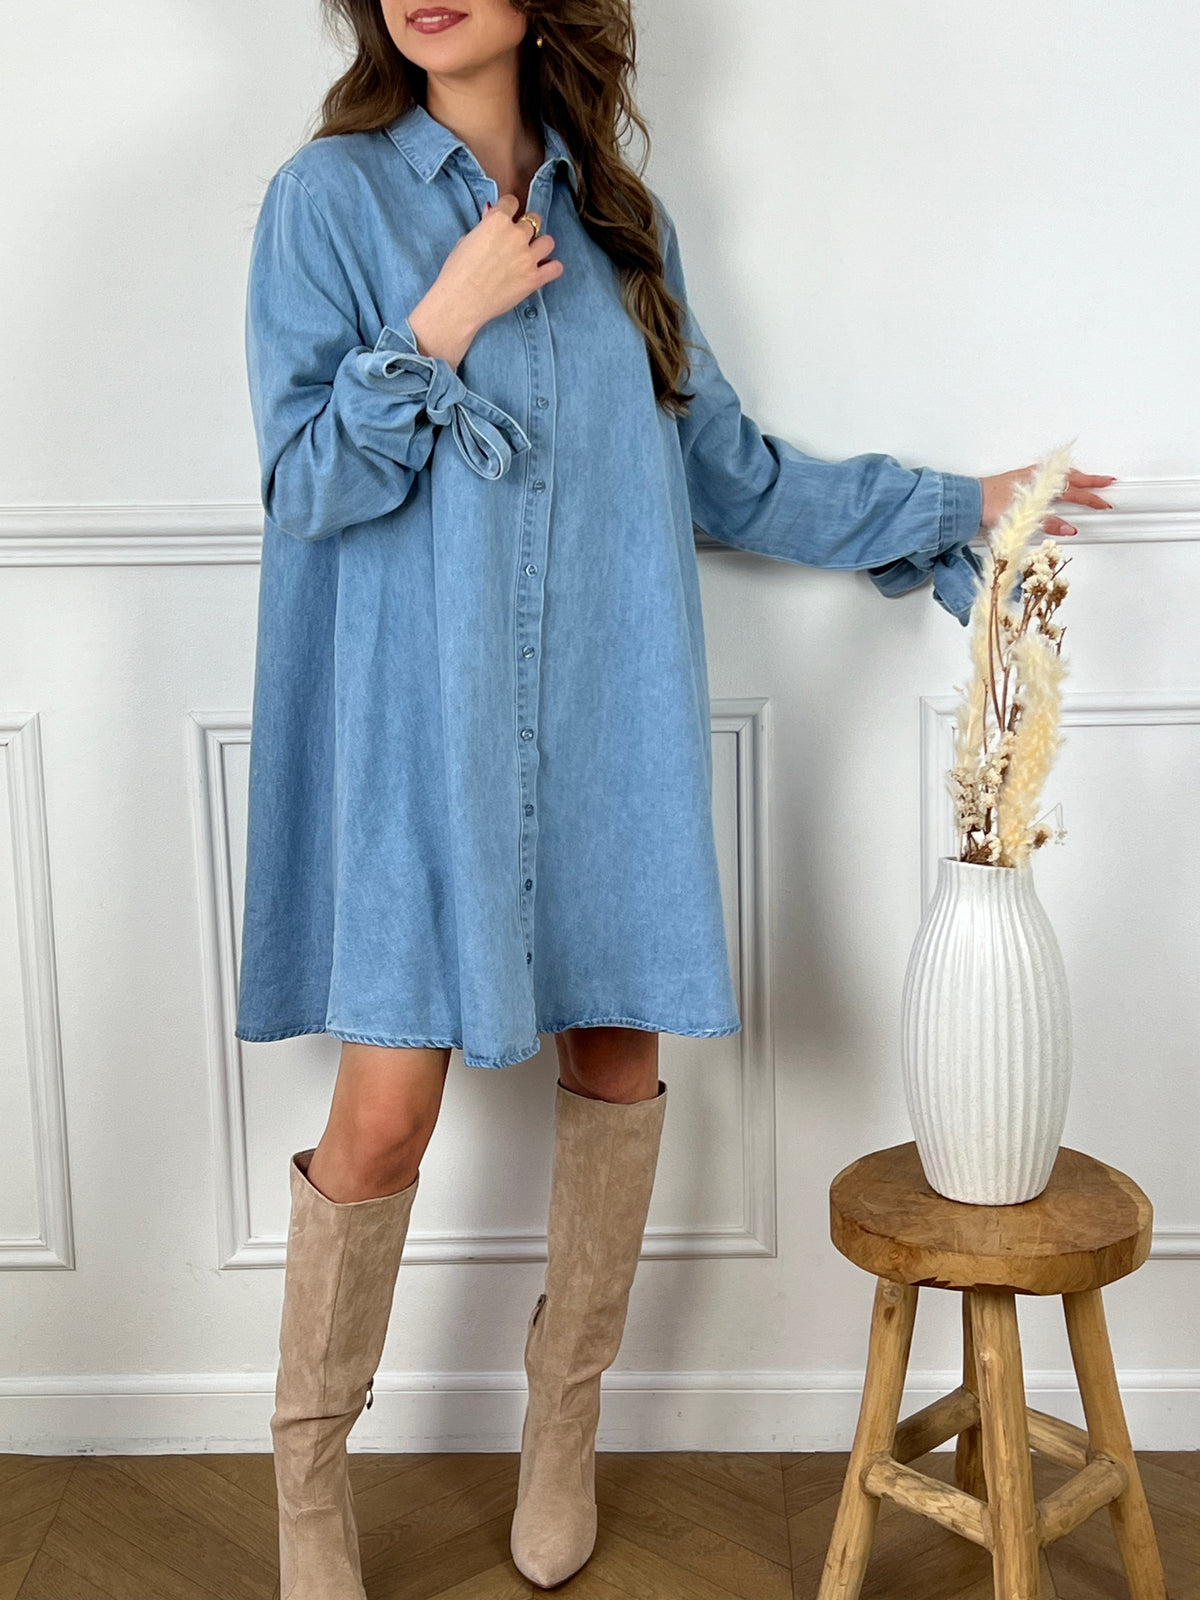 Dynamisez votre garde-robe avec la robe Zoena en jean bleu ! Cette robe courte est parfaite pour toutes les occasions grâce à ses manches longues, ses boutons sur la longueur et ses liens aux manches. Ajoutez une touche de couleur et de style à votre tenue avec cette robe en jean tendance.